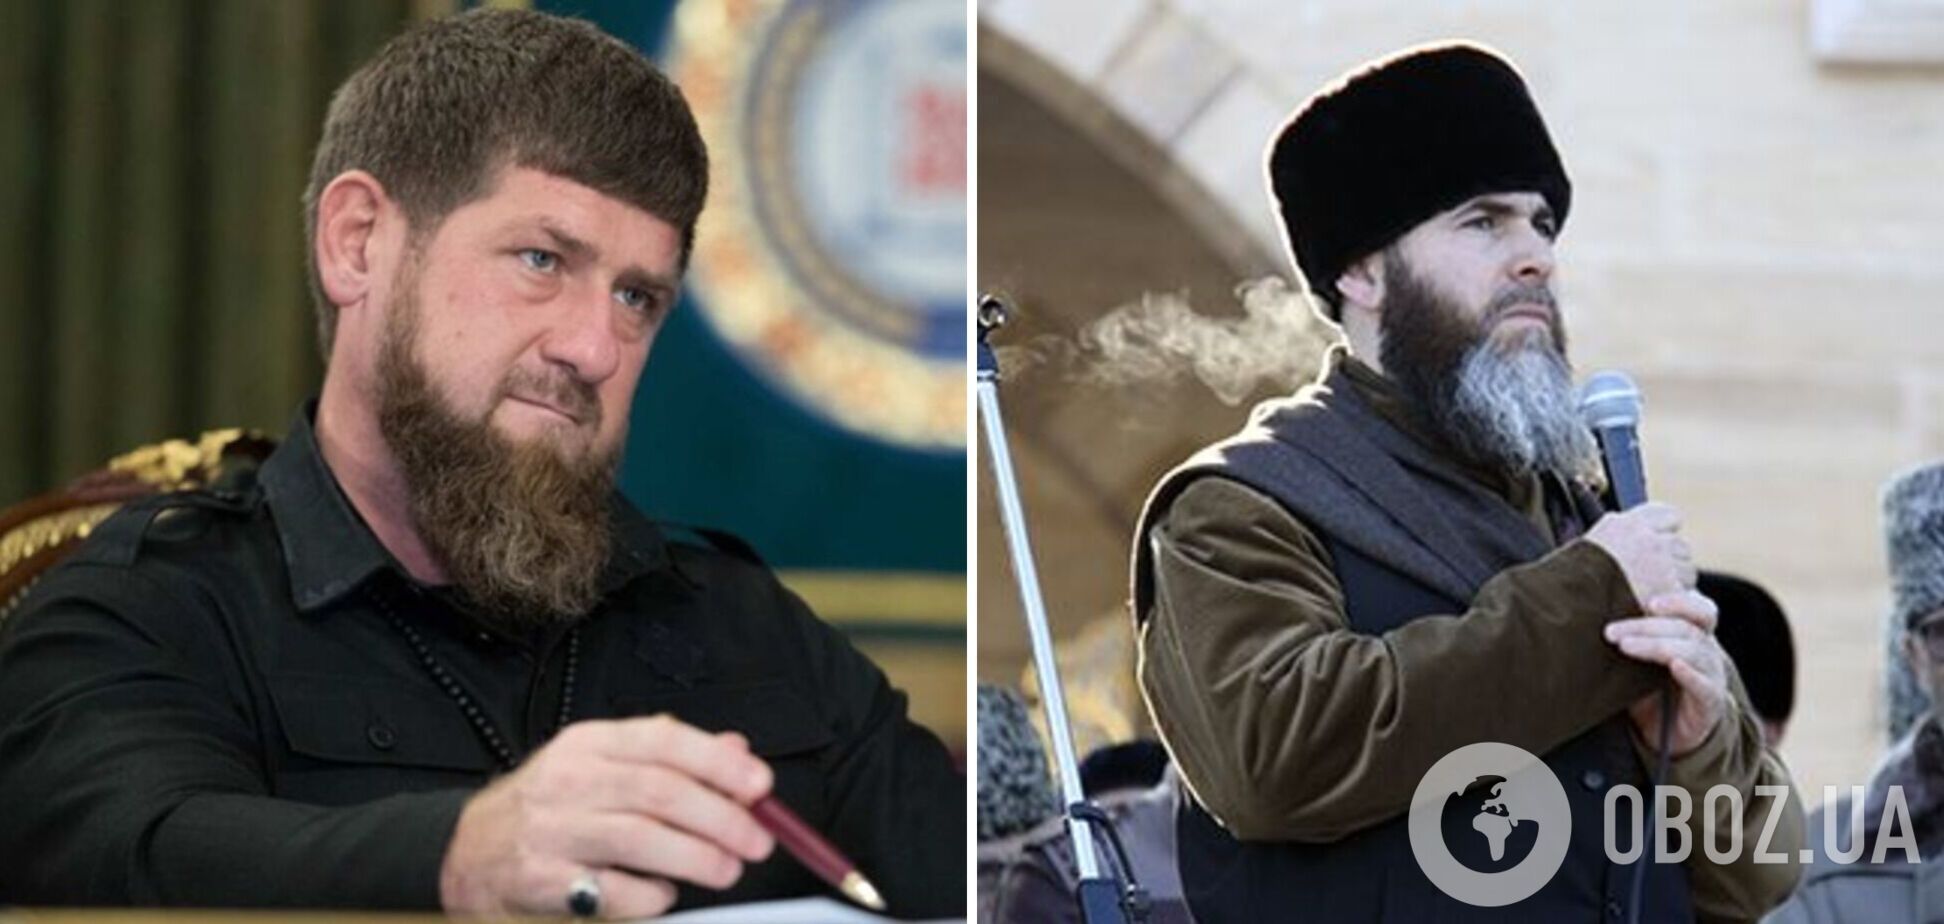 'Закликаєш людей у рай, але сам туди не хочеш': муфтій Чечні розкритикував Кадирова за відправку 'добровольців' на війну проти України 